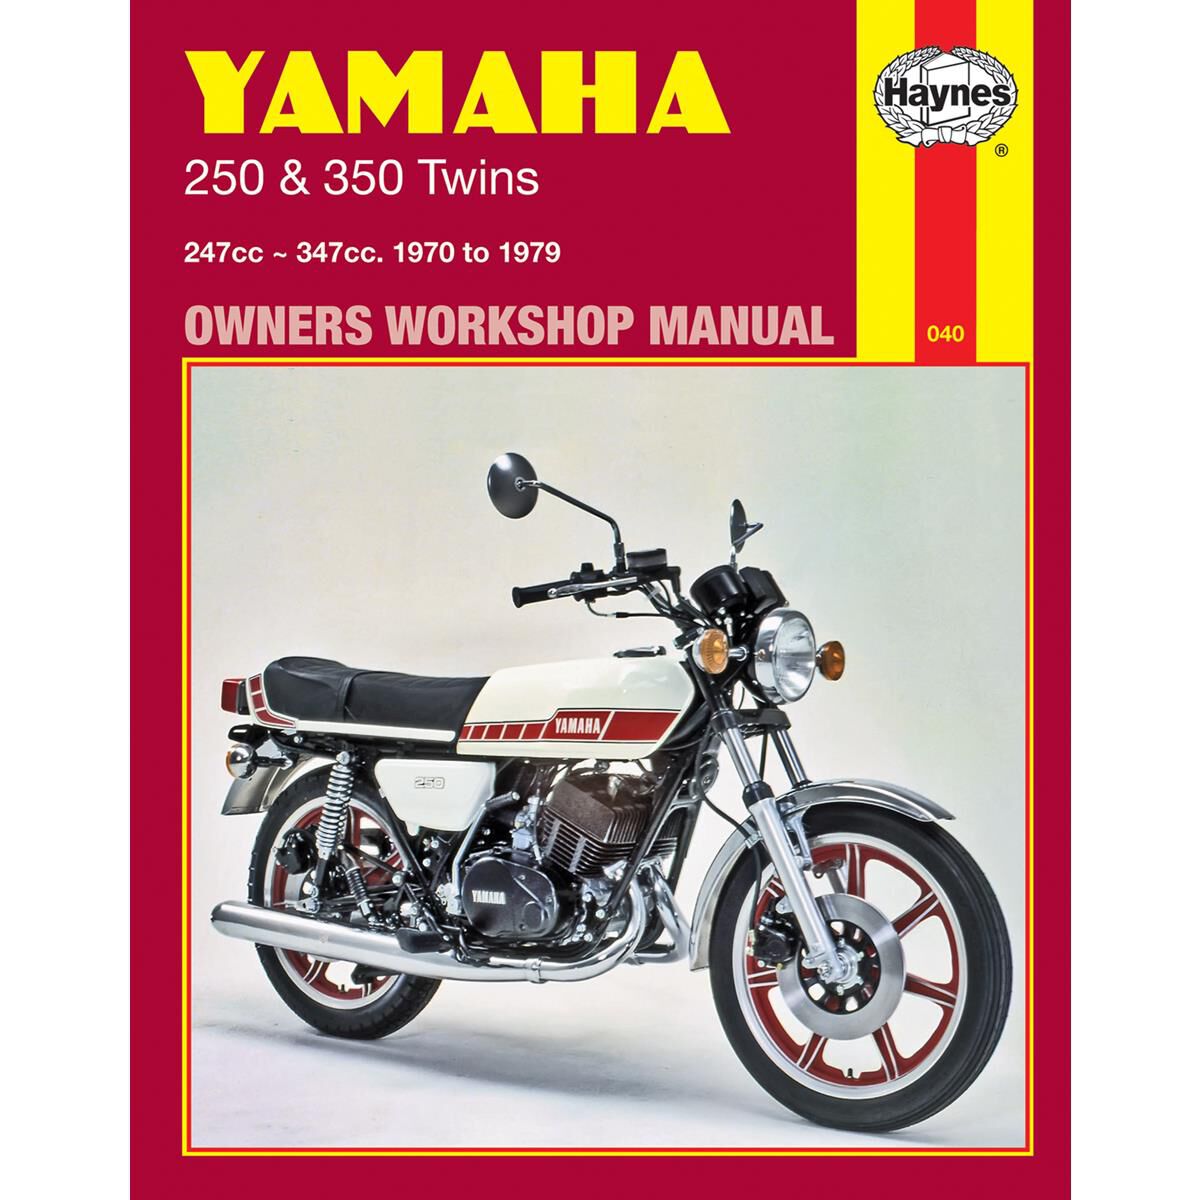 Haynes Manual Fits Yamaha RD400 Twin 75-79 